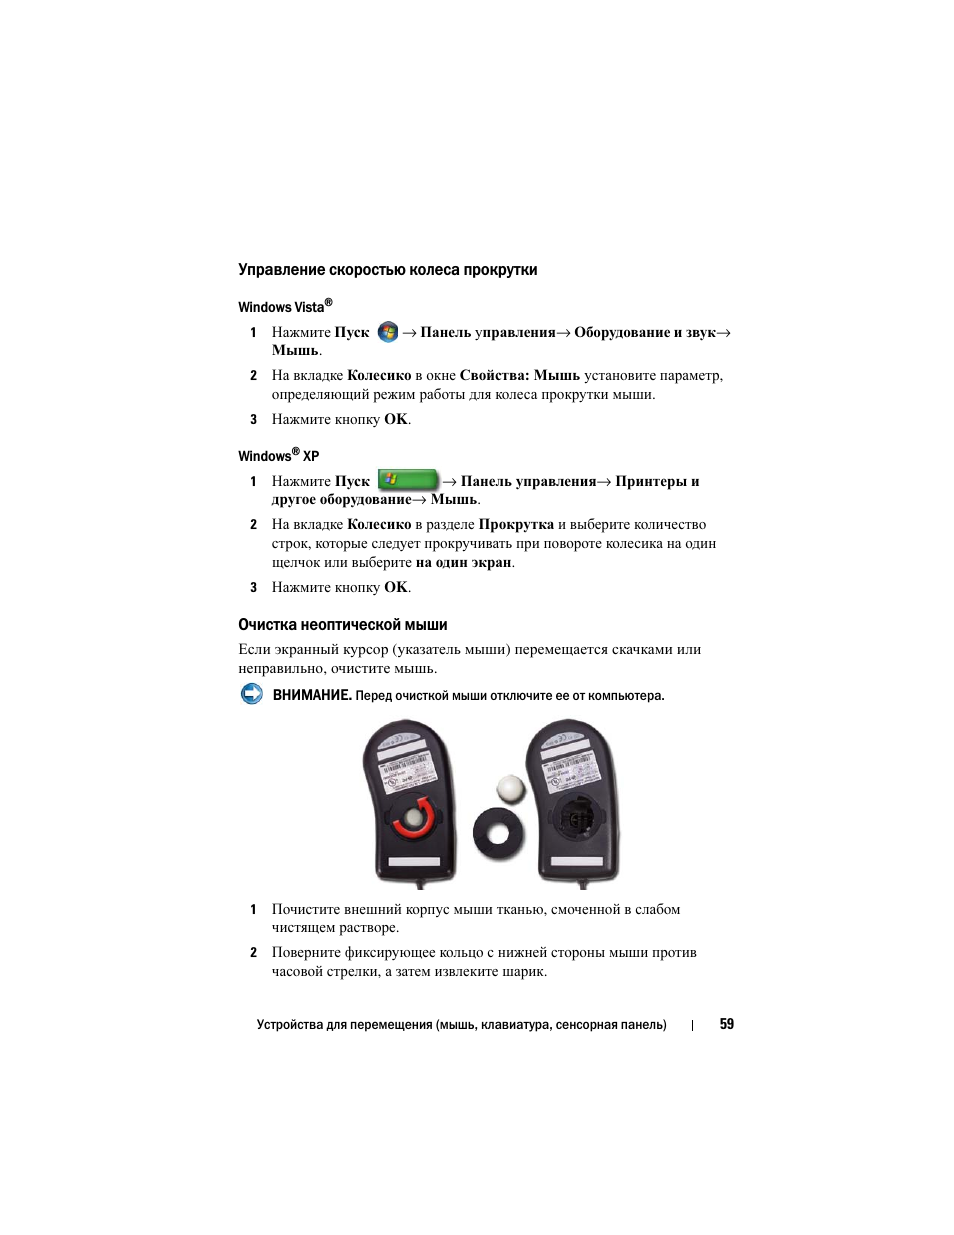 Управление скоростью колеса прокрутки, Очистка неоптической мыши | Инструкция по эксплуатации Dell Inspiron 560 | Страница 59 / 384